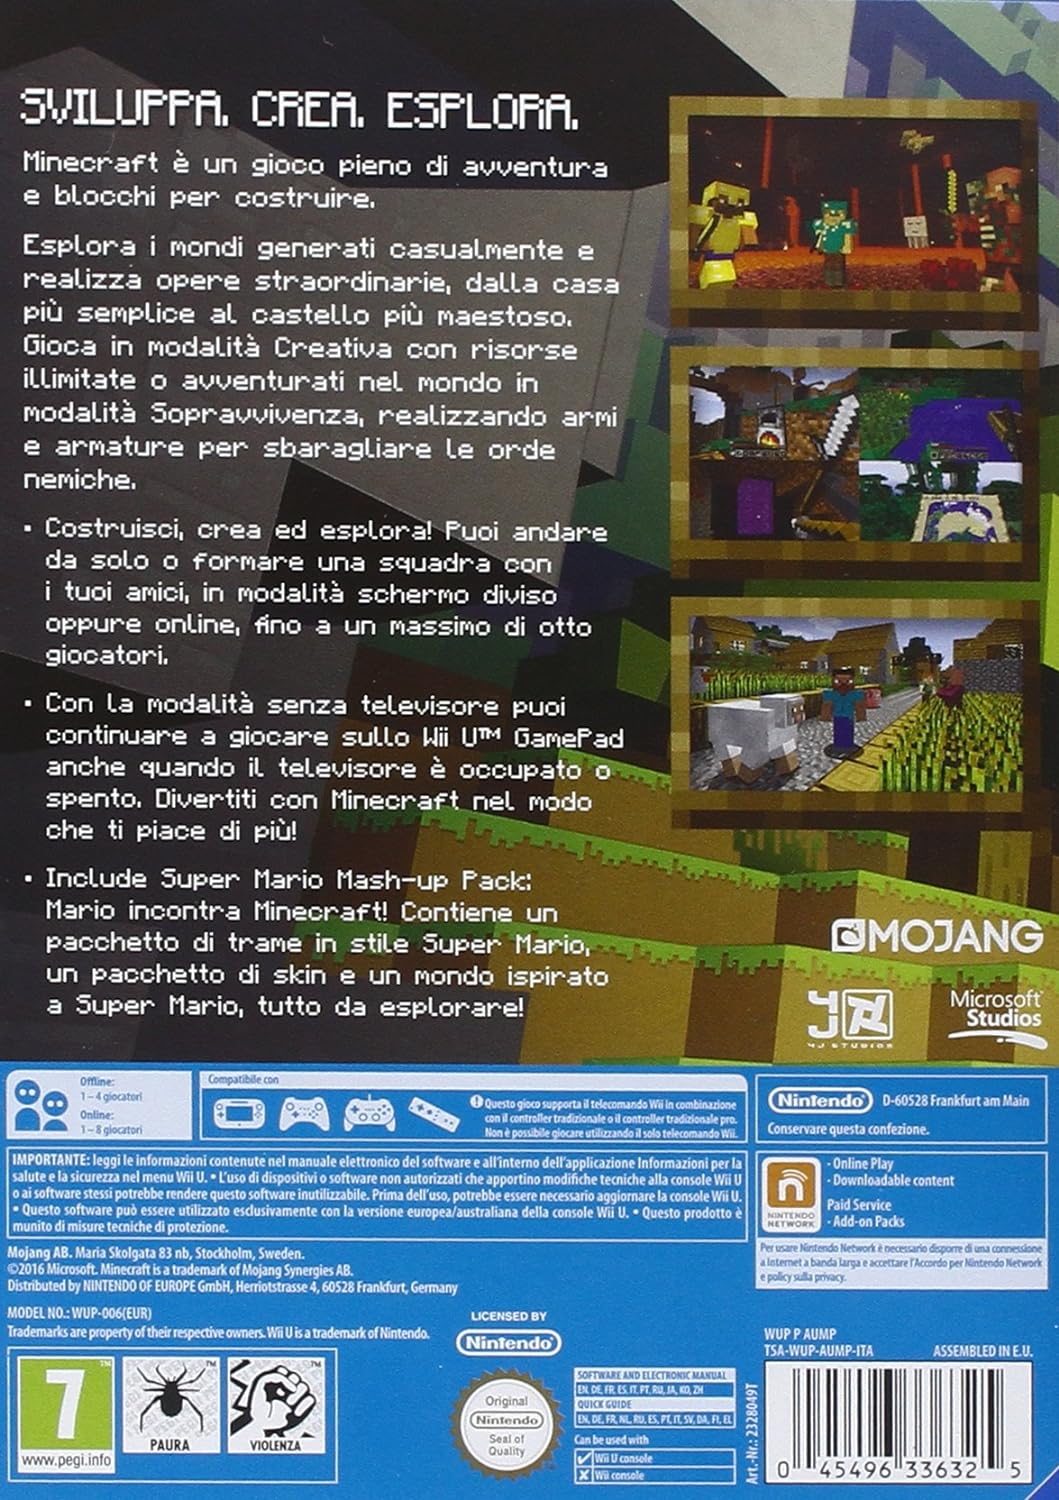 WIIU Minecraft WiiU Edition - Usato Garantito Disponibilità immediata Mojang